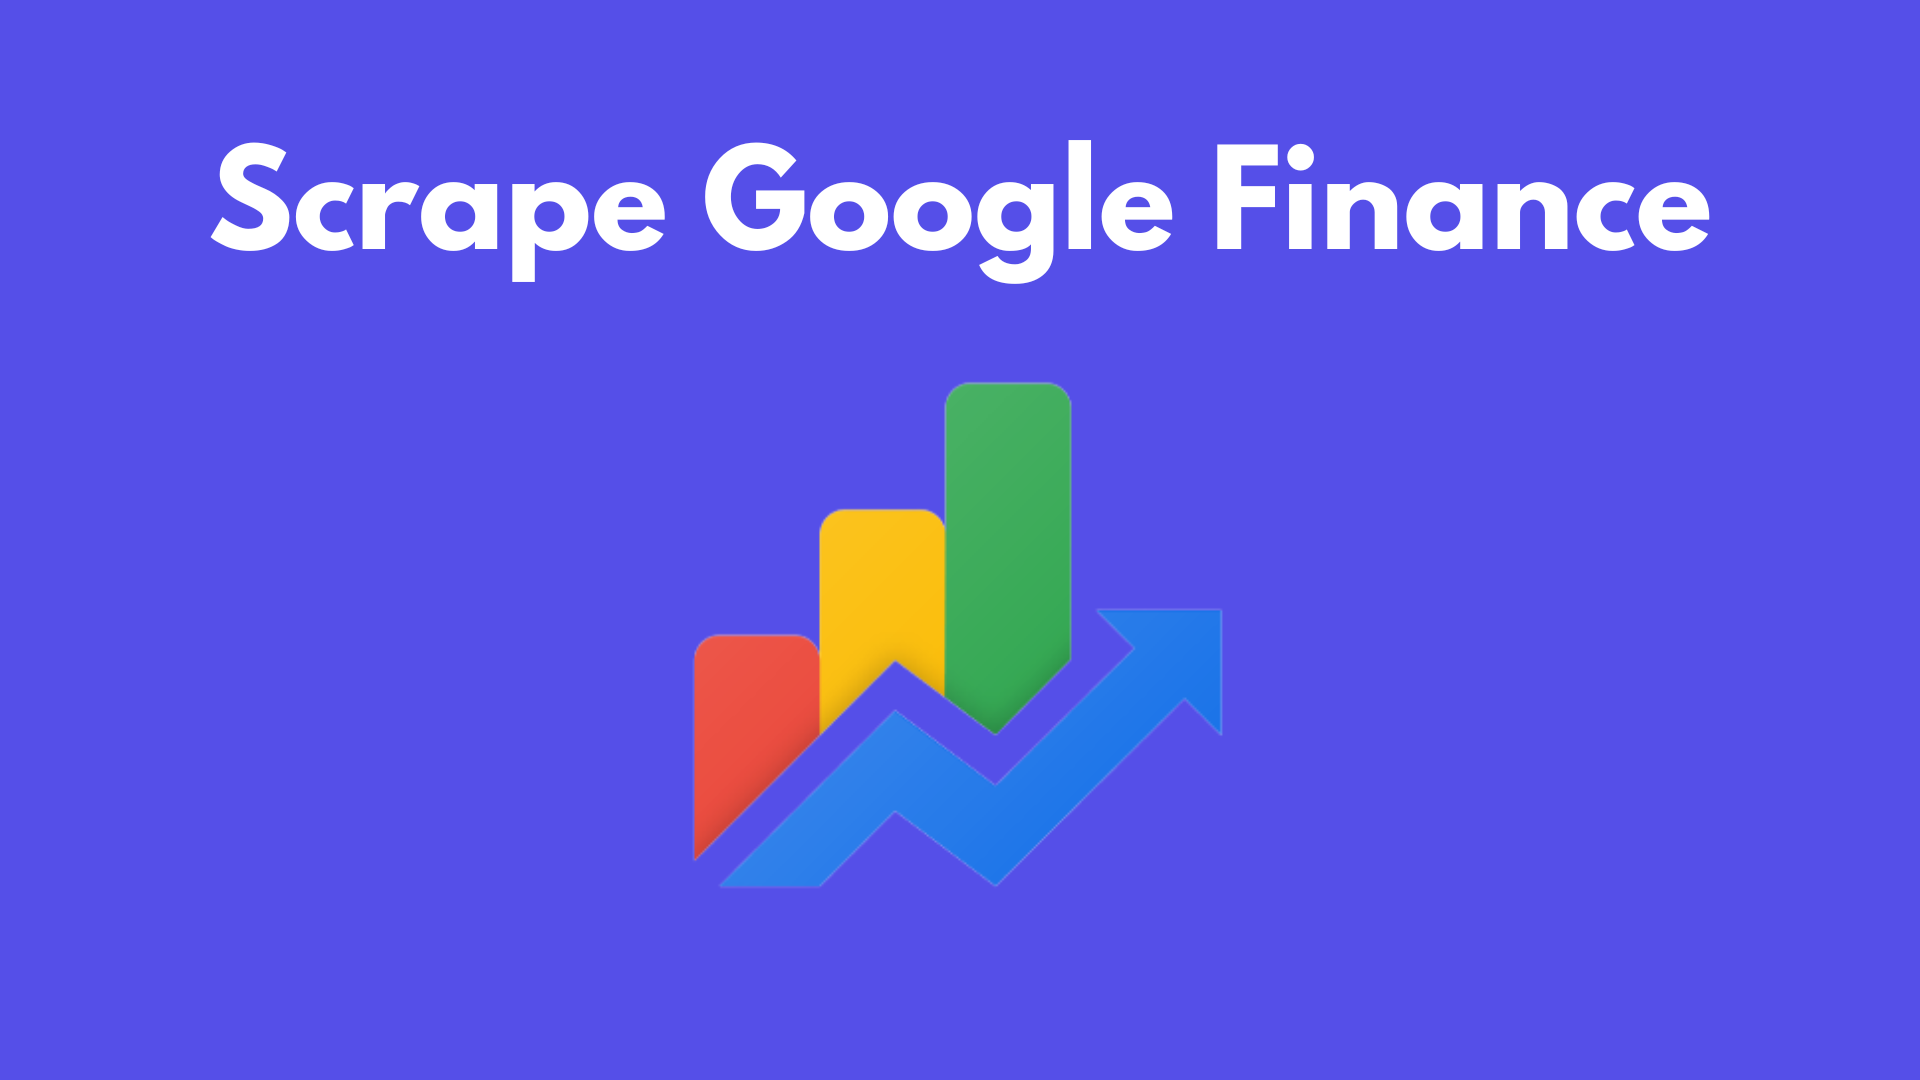 Scrape Google Finance With Node JS